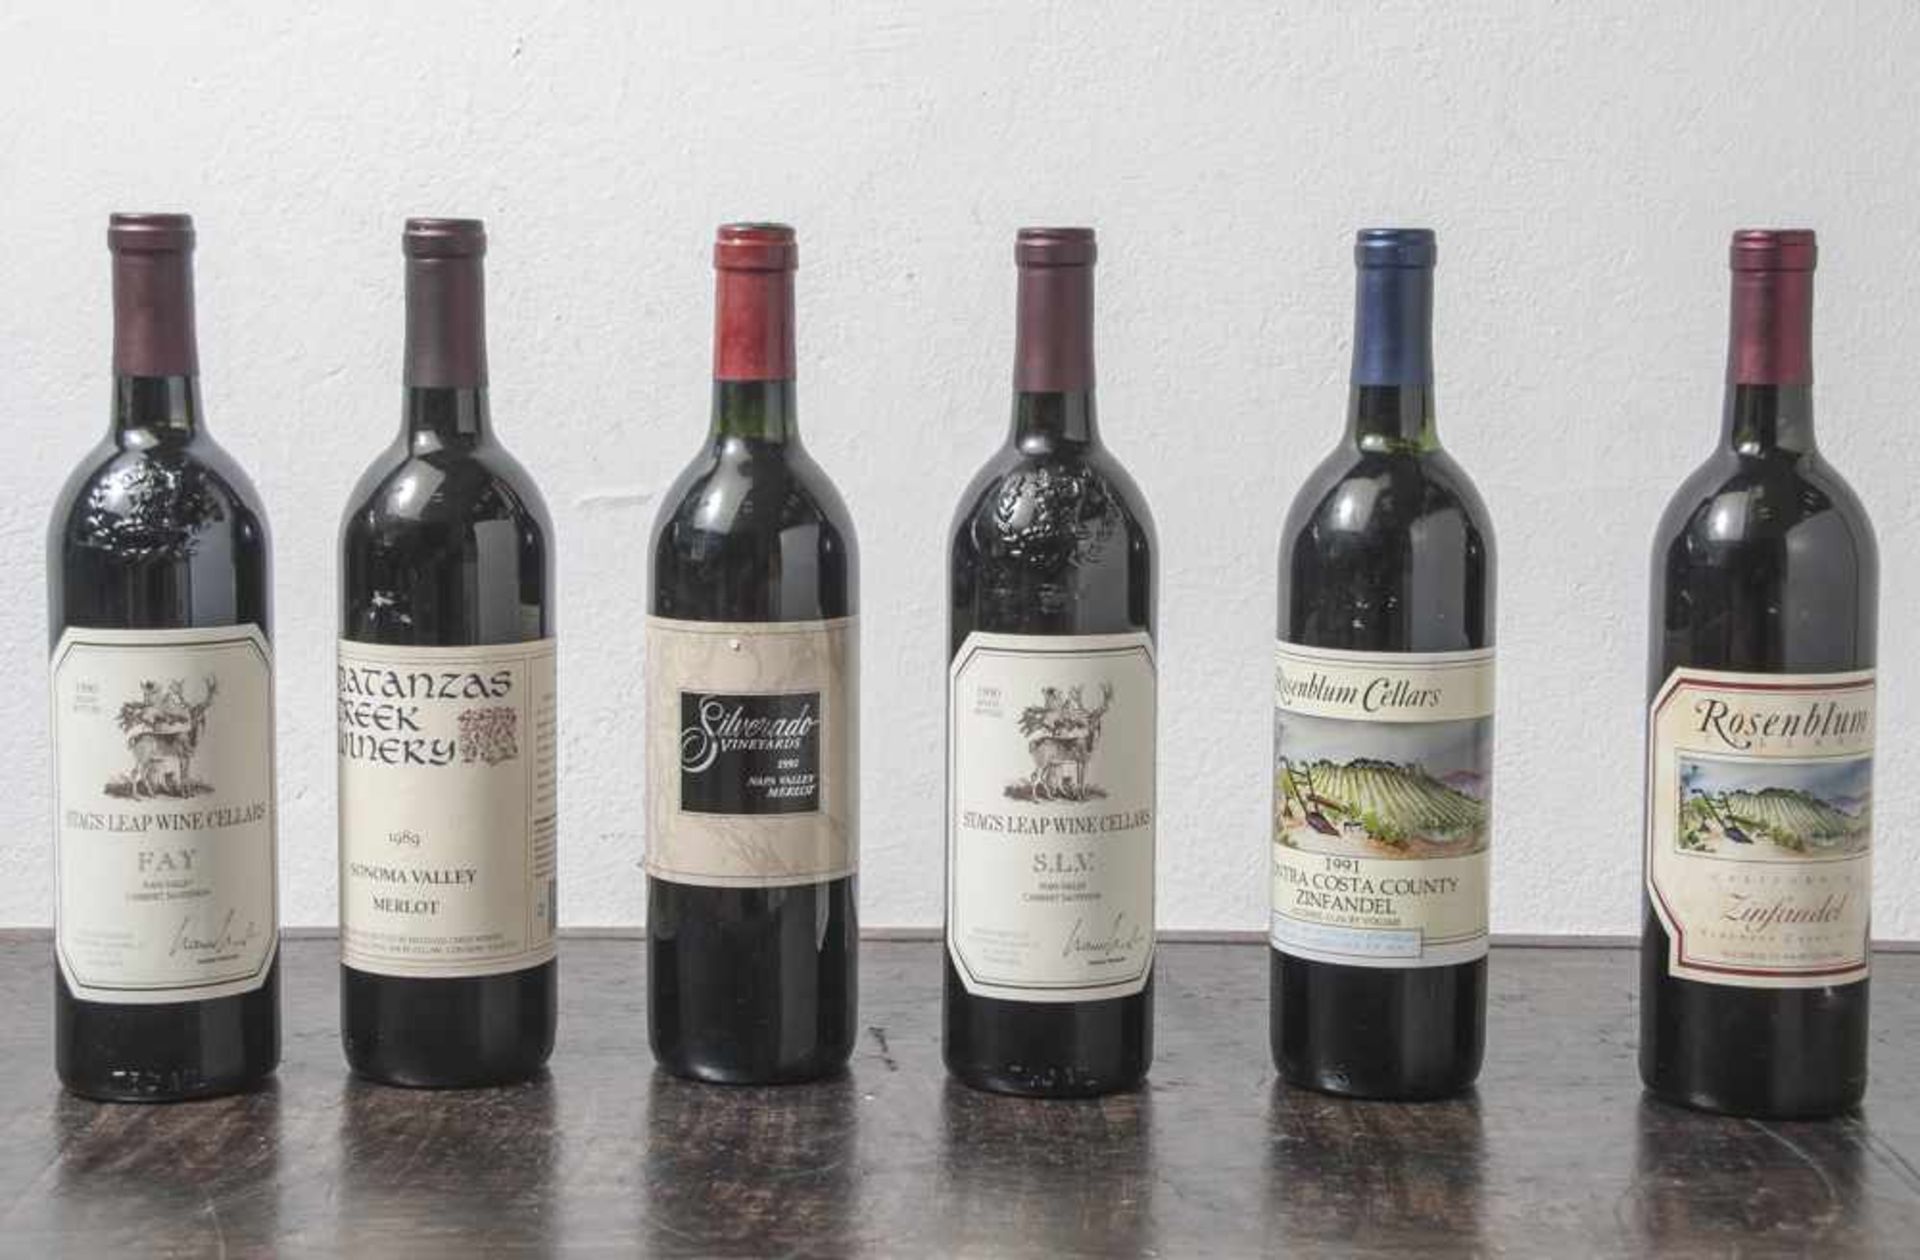 Konvolut von 6 Weinflaschen, darunter: a) 2x 1990er Stags Leap Wine Cellars Fay NapaValley